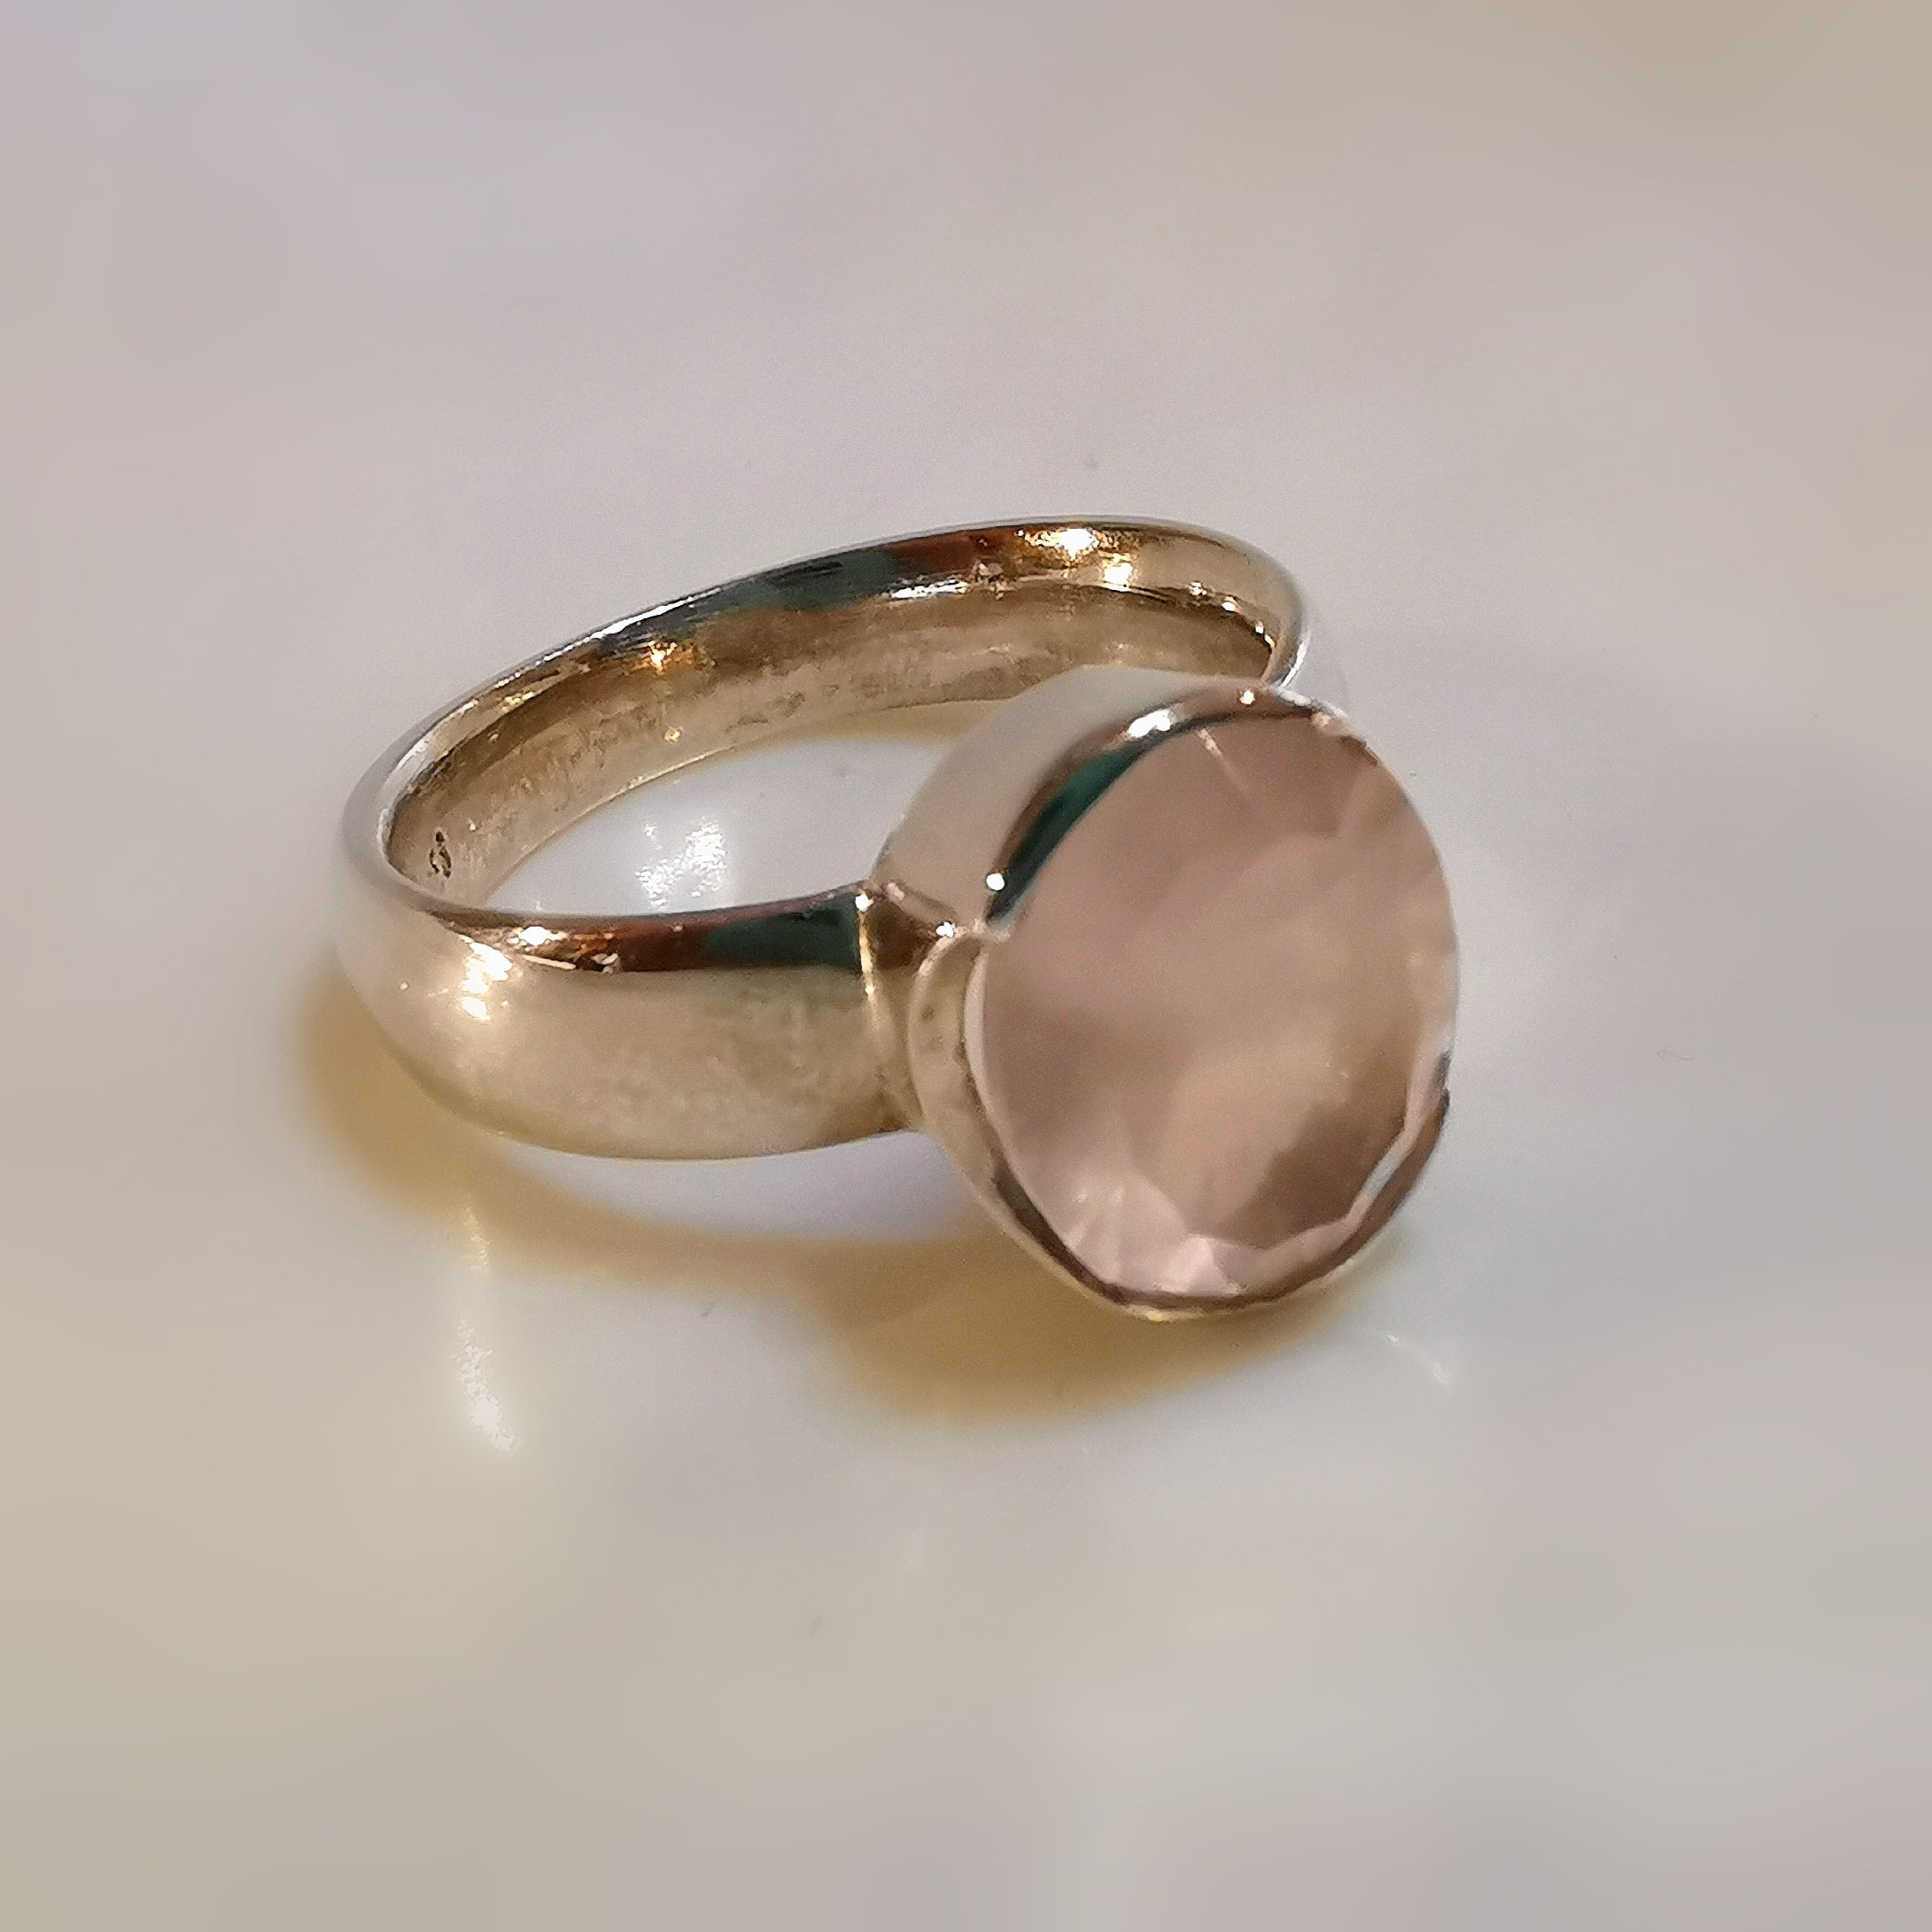 Rosenquarz lichtvoller Schliff, zart Rosa AA Qualität Heilstein Edelstein Sterlingsilber Ring - Größe 52- Herzenssache